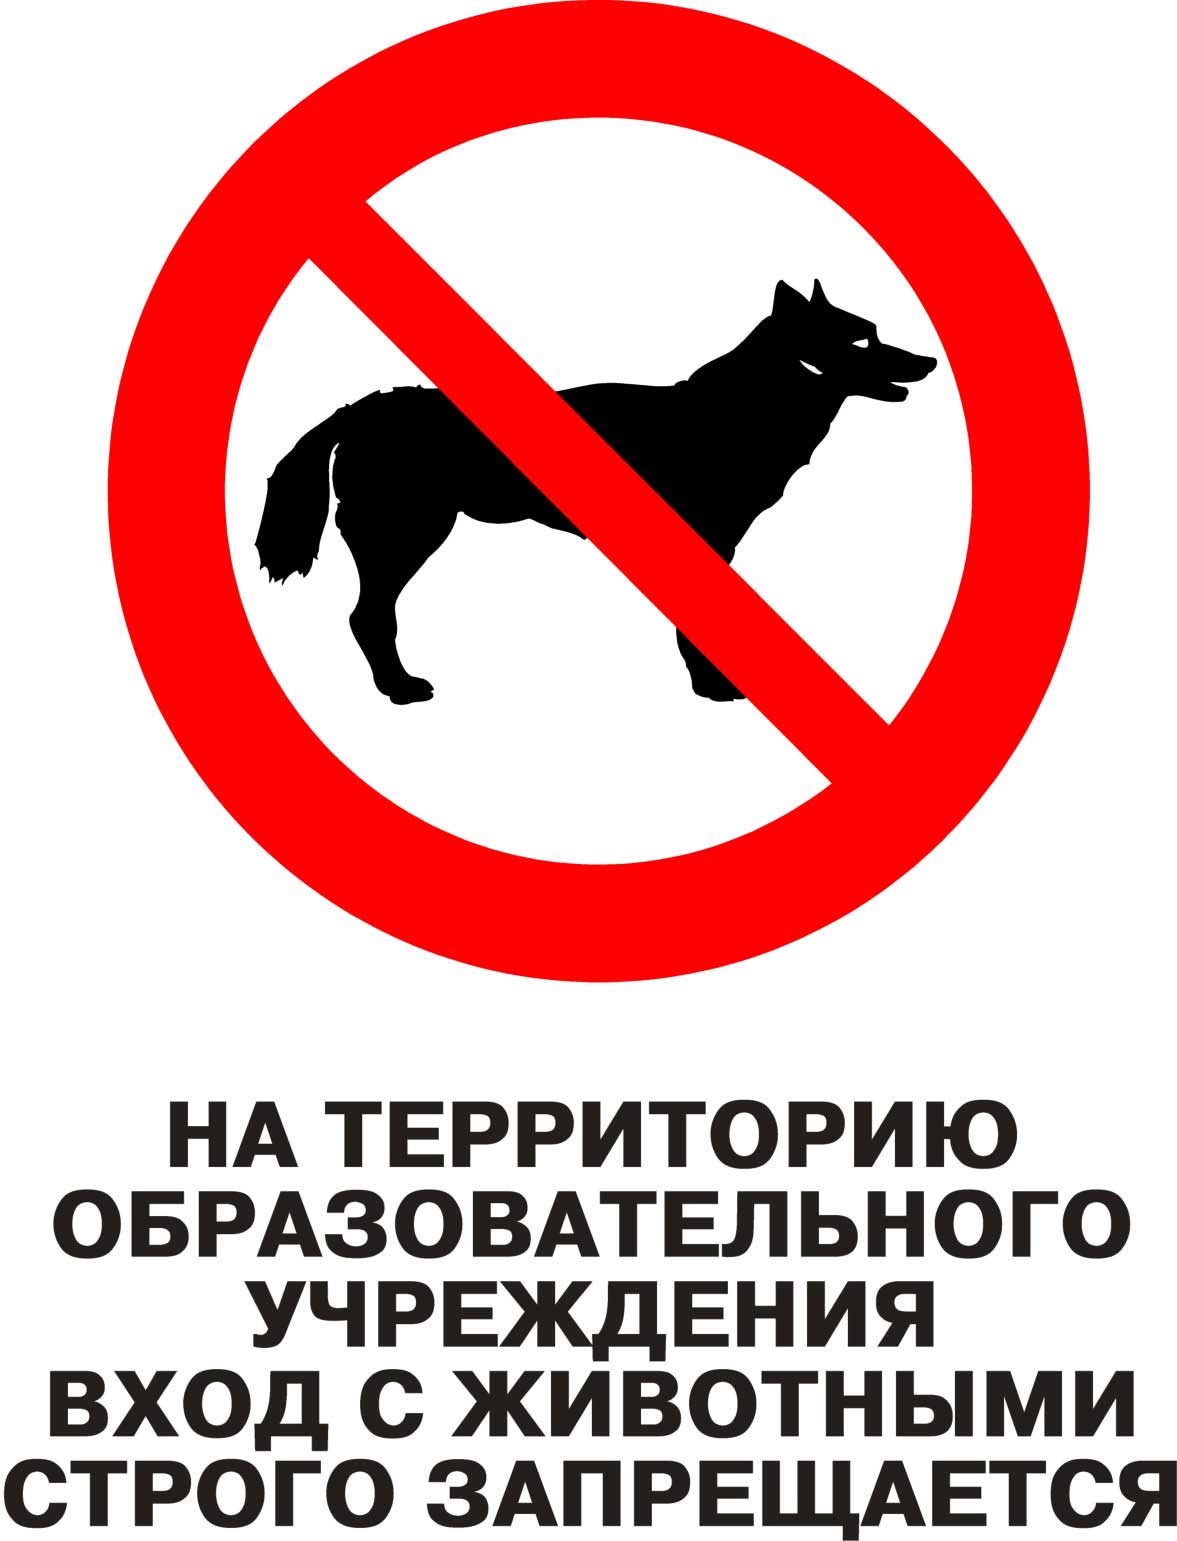 Запреты в детском саду. Вход с собаками запрещен. Вход с санками запрещен. Выгул собак запрещен. Вход на территорию школы с собаками запрещен.